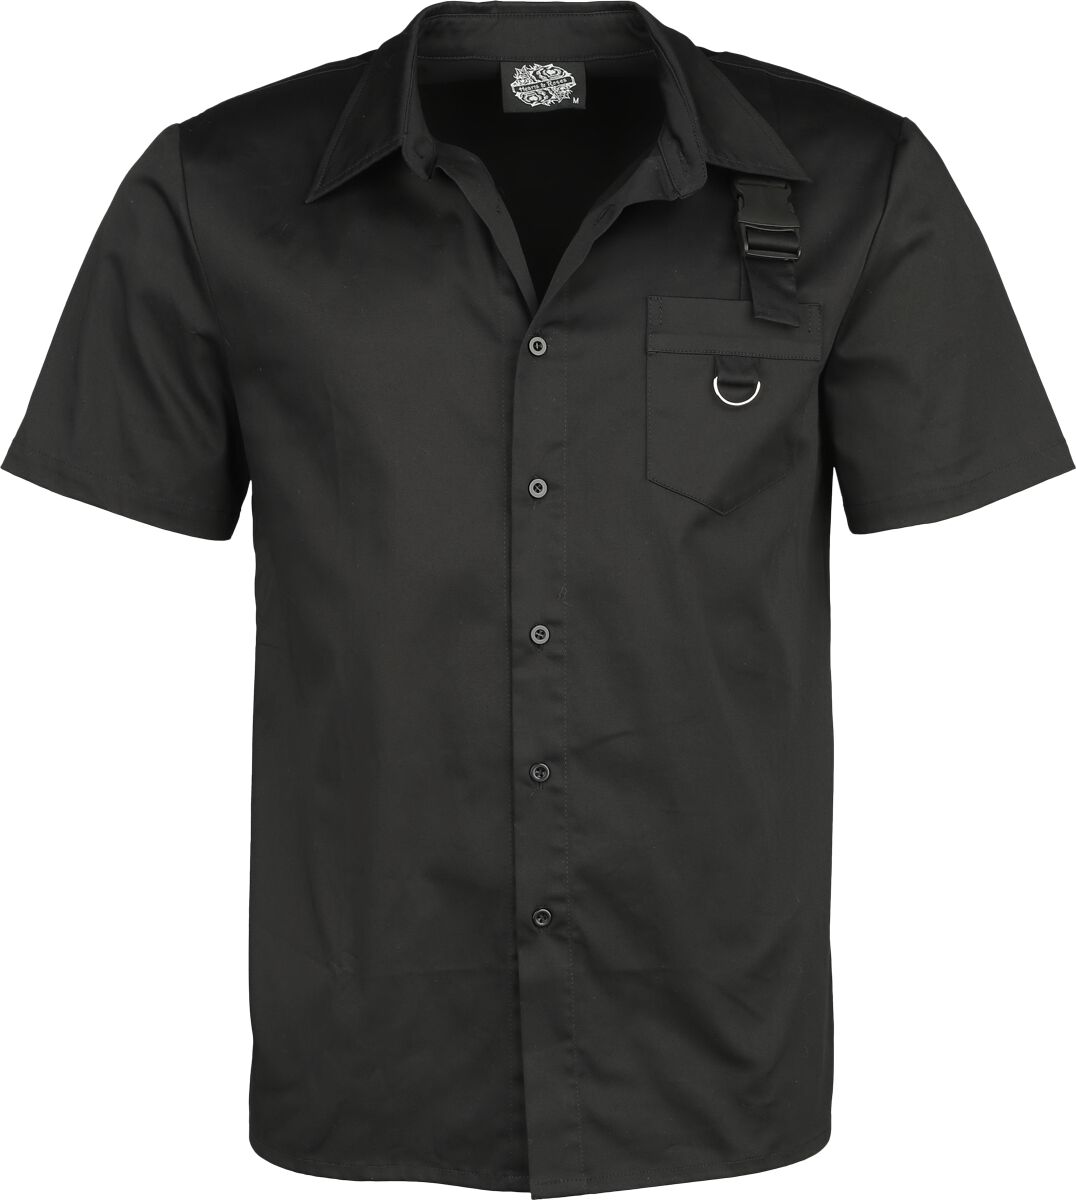 H&R London - Gothic Kurzarmhemd - Black Shirt - S bis 4XL - für Männer - Größe L - schwarz